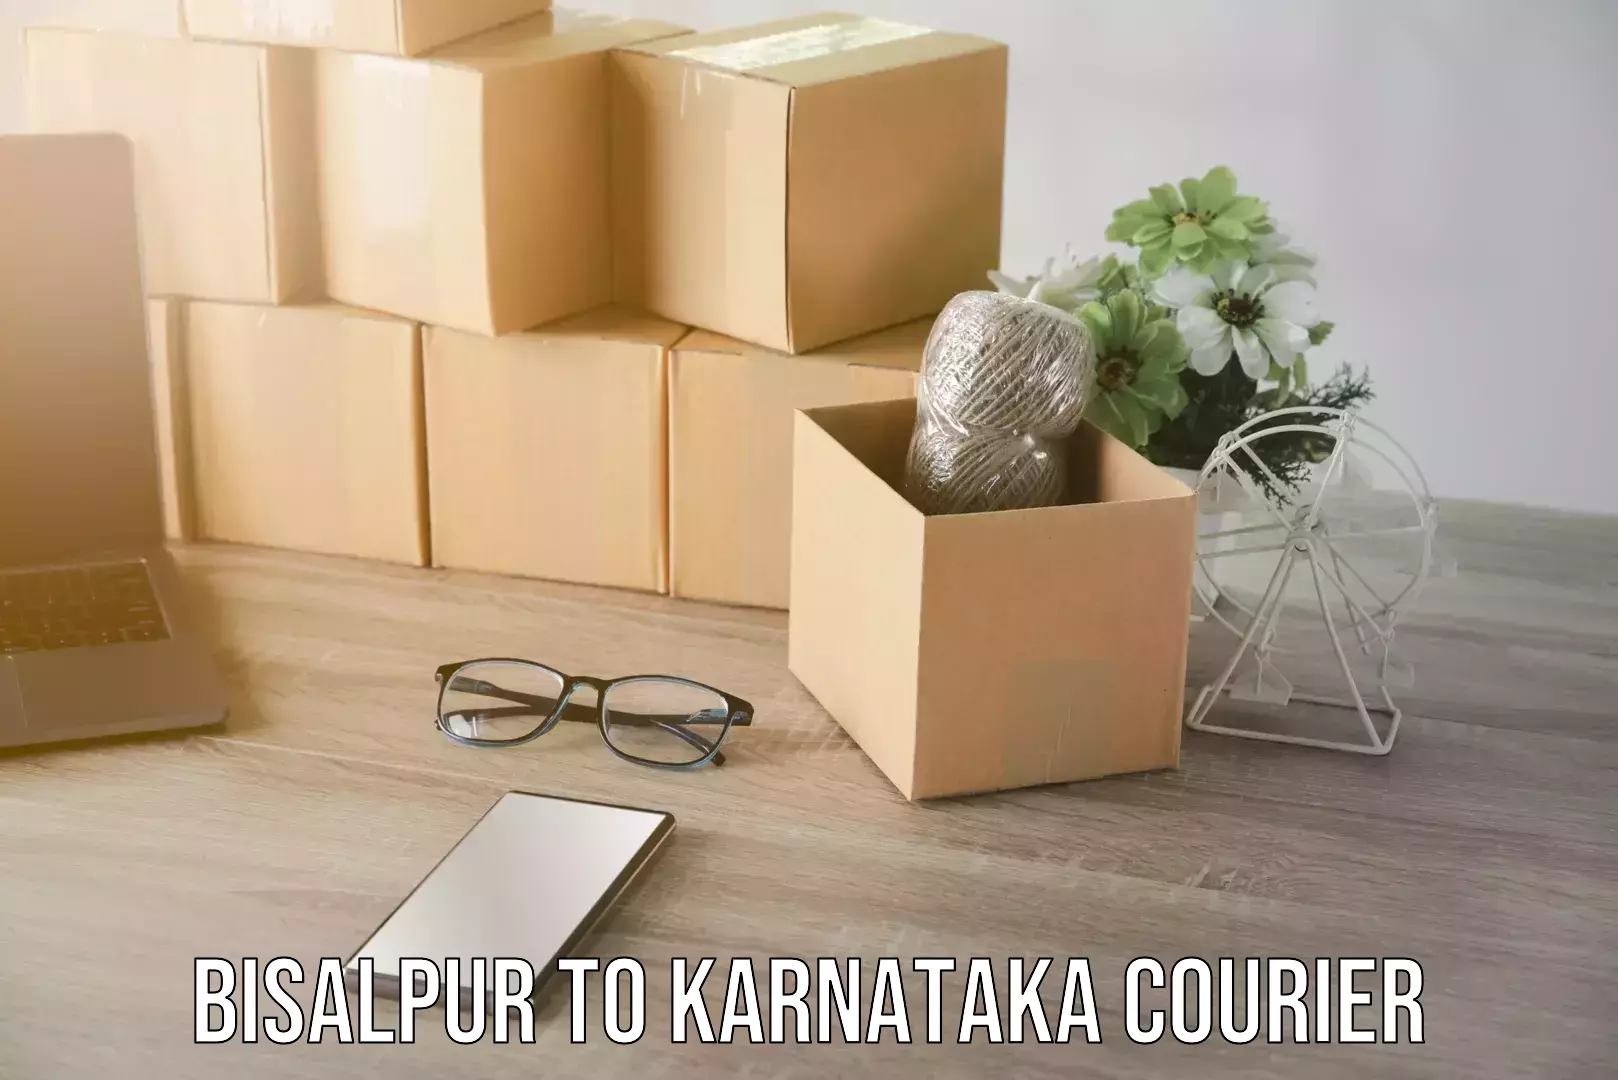 Efficient cargo services Bisalpur to Karnataka